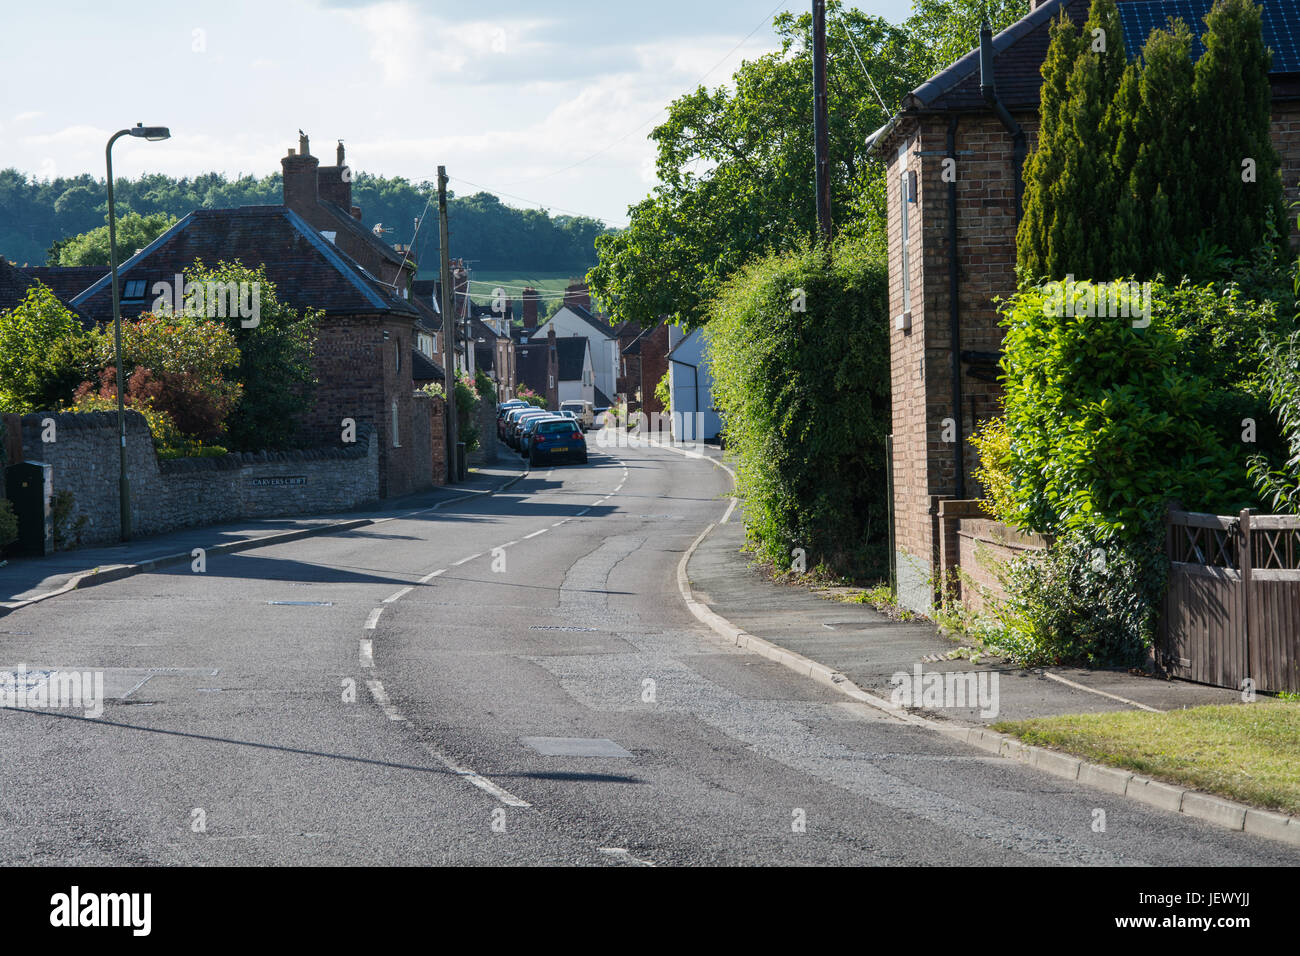 Une courbe sur la route d'une journée ensoleillée dans les régions rurales de l'Angleterre. Barrow Street, Much Wenlock, Shropshire, au Royaume-Uni. Banque D'Images